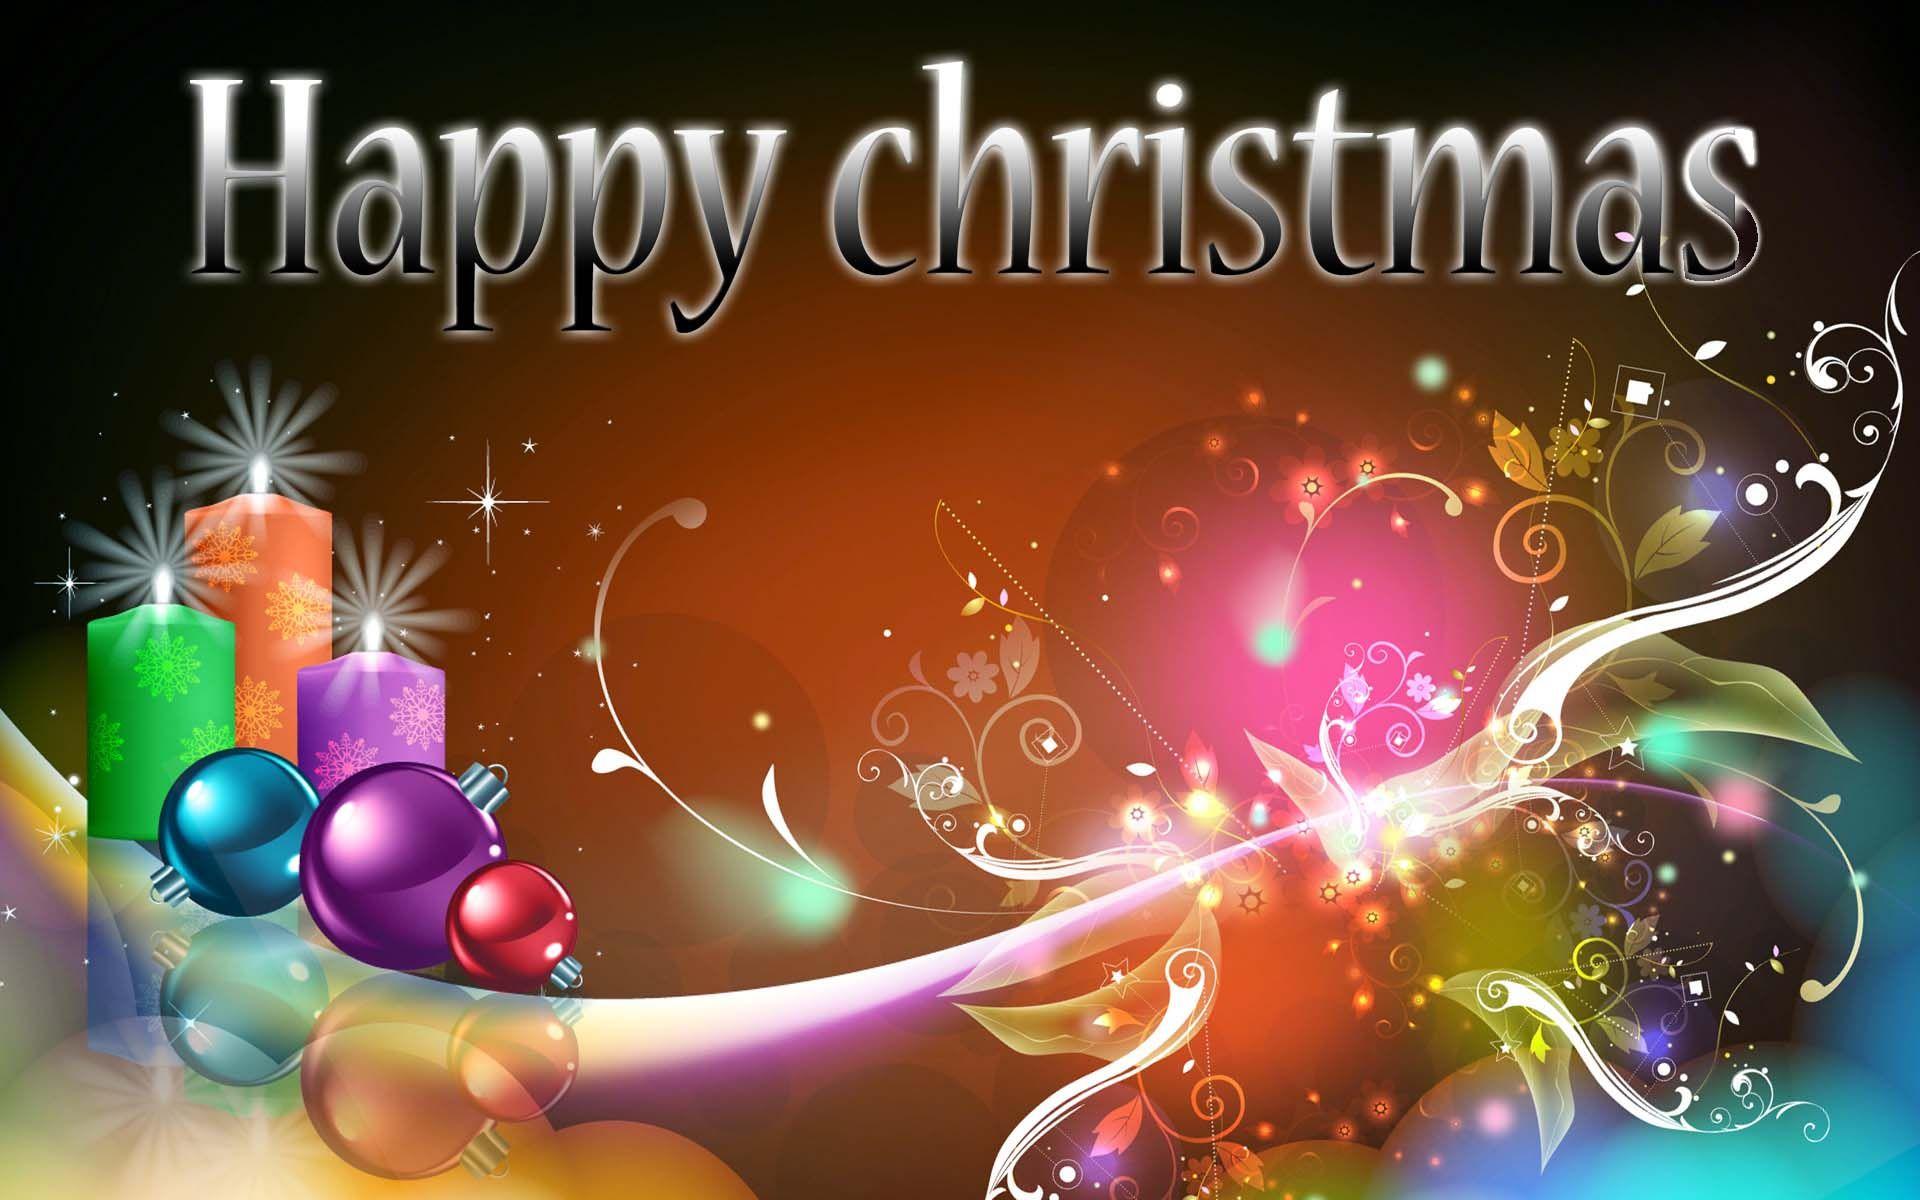 Merry Christmas HD. HD Christmas Wallpaper for Mobile